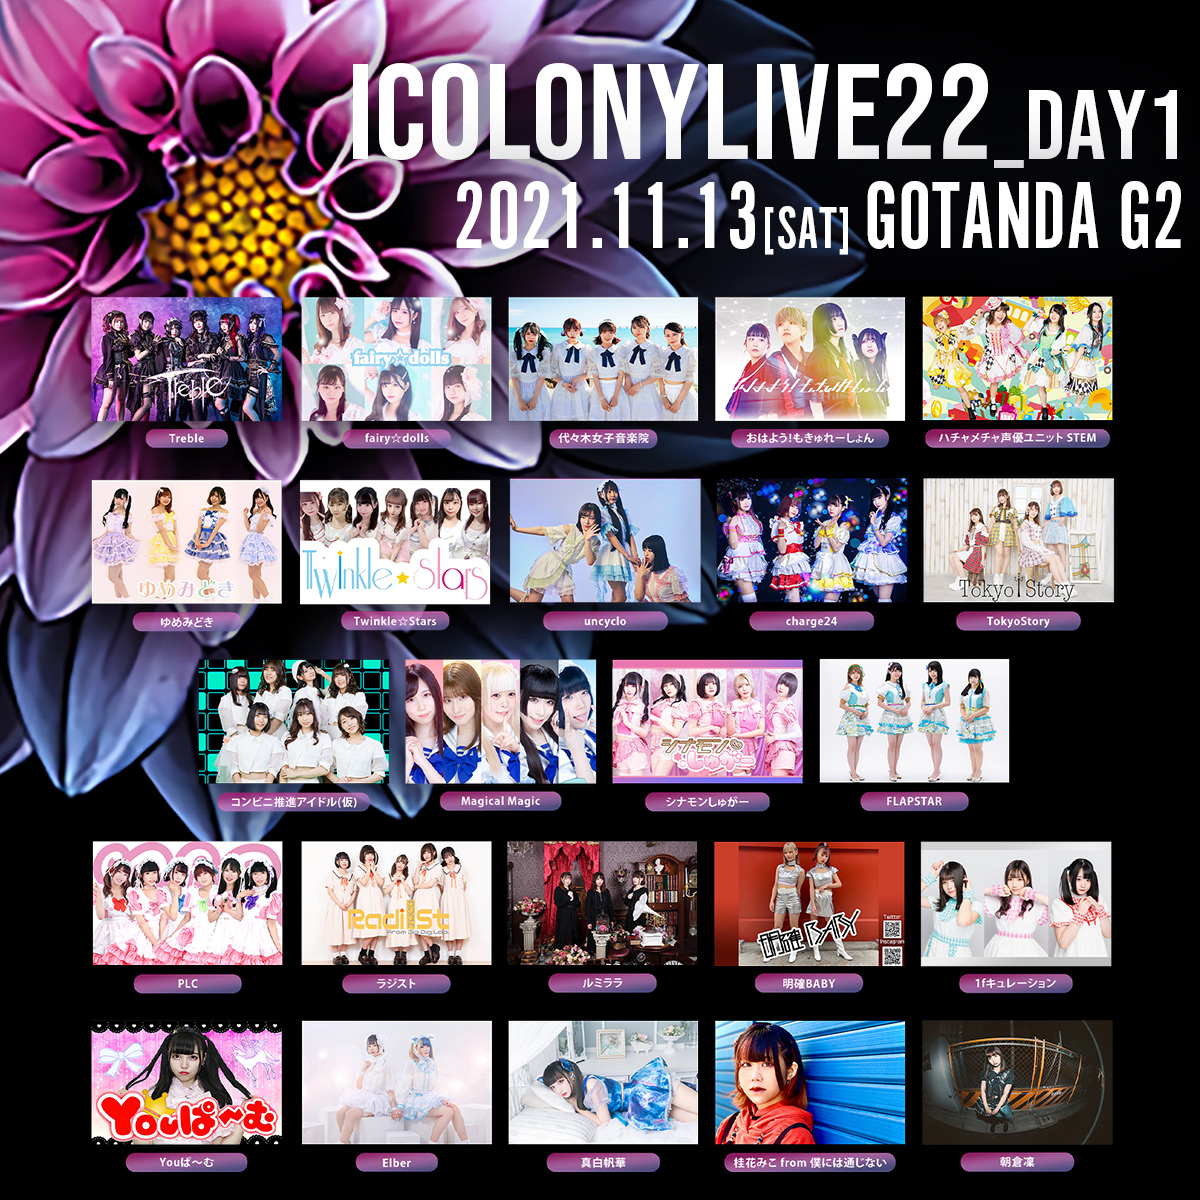 iColony LIVE 22 // DAY1